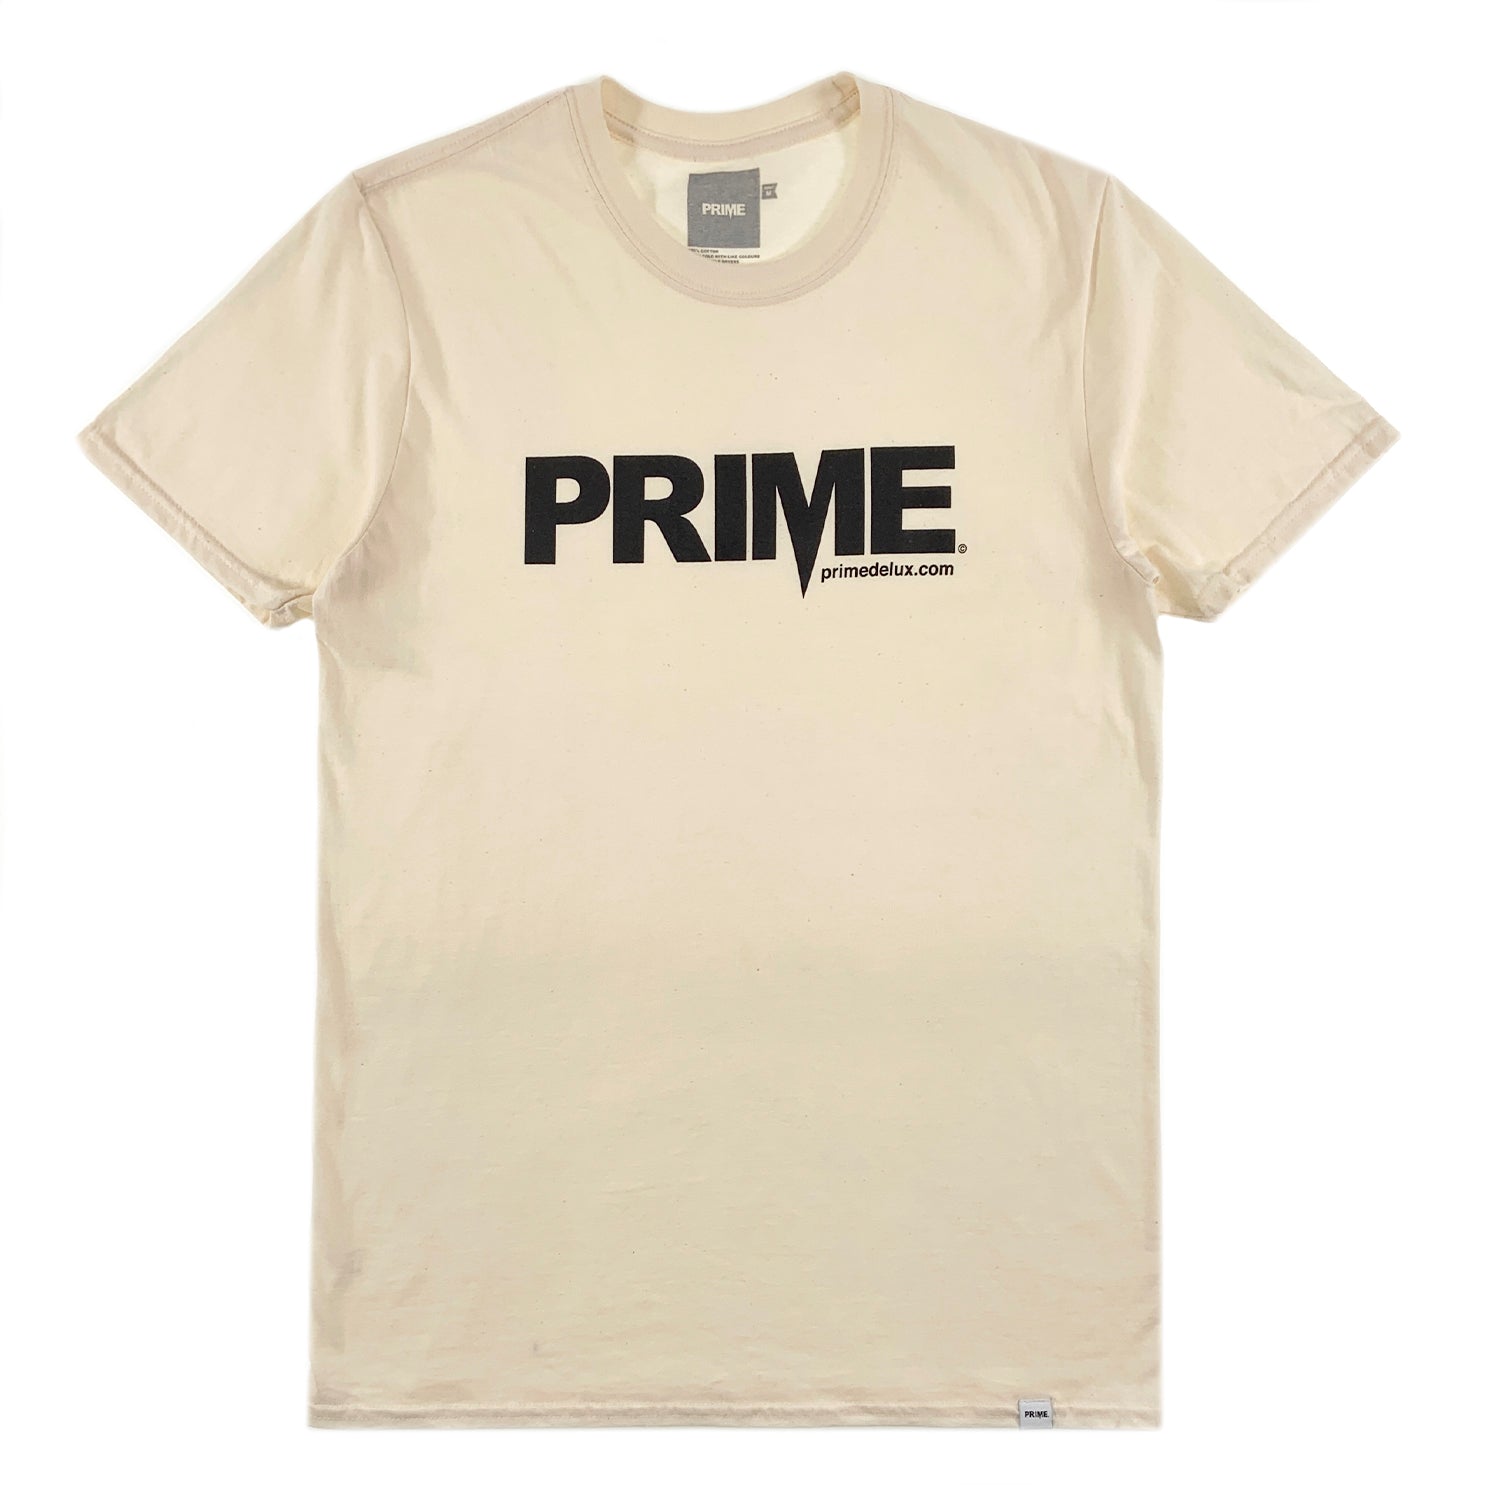 PRIME DELUX OG PREMIUM SHORT SLEEVE T-SHIRT - NATURAL / BLACK - Prime Delux Store